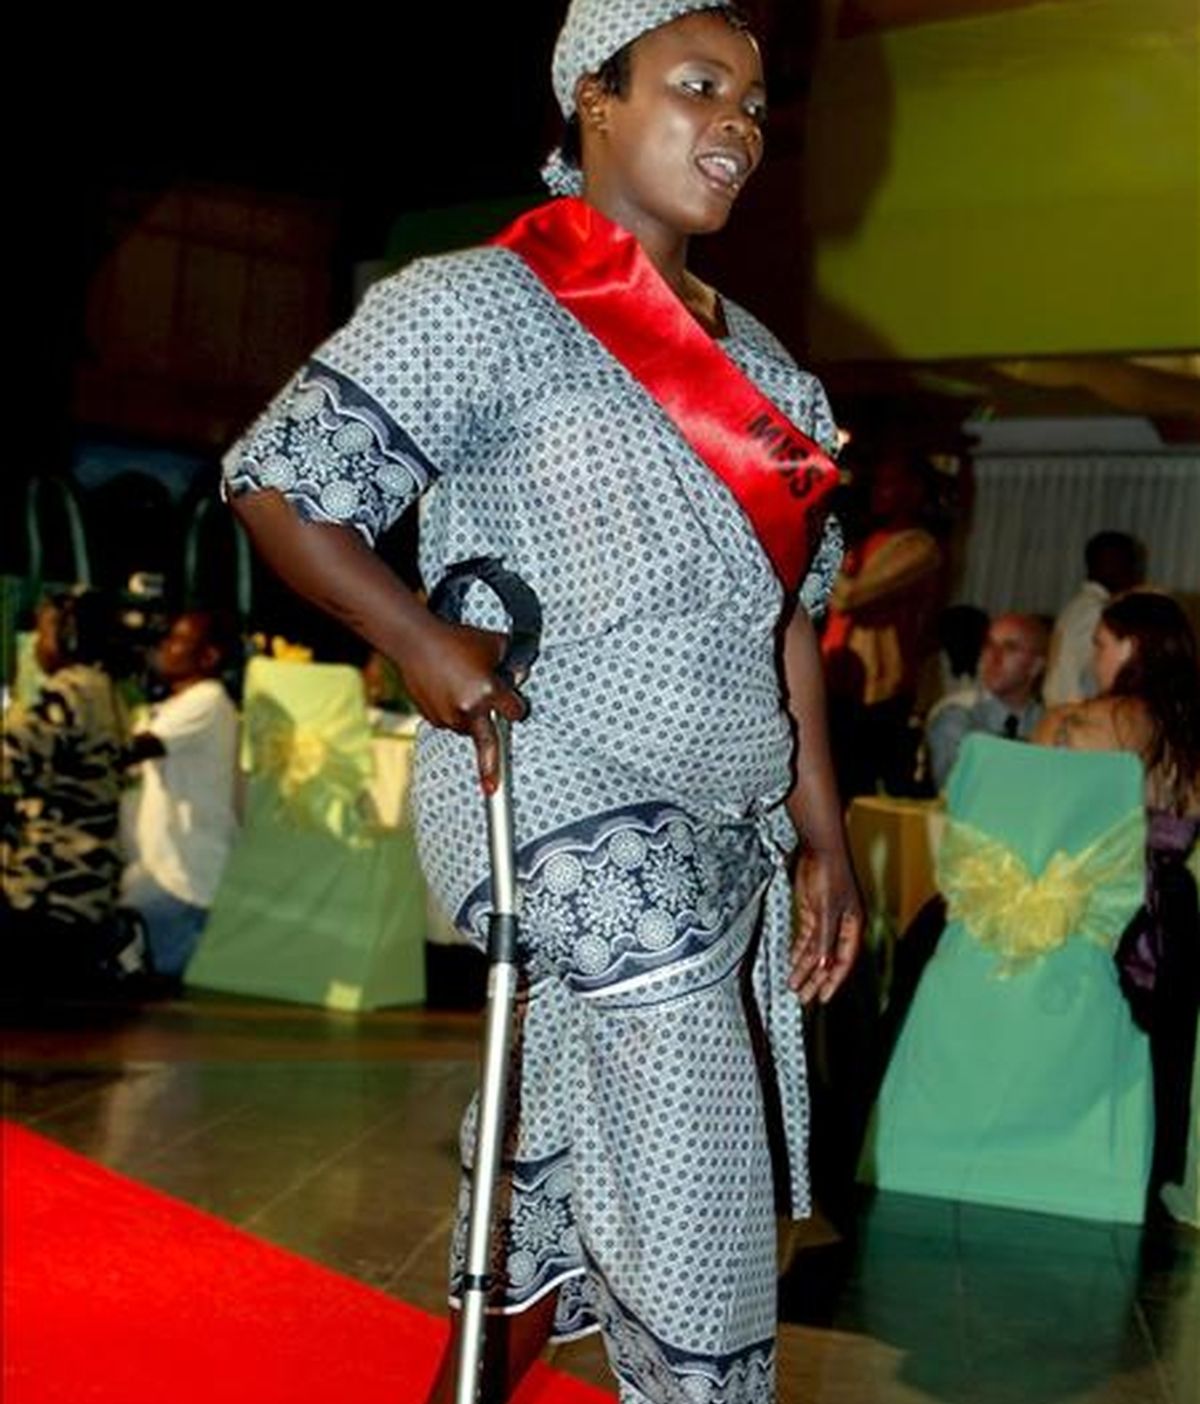 Una mujer, participa en el concurso "Miss Sobreviviente de Minas antipersona" celebrado en Angola, en abril de 2008. EFE/Archivo